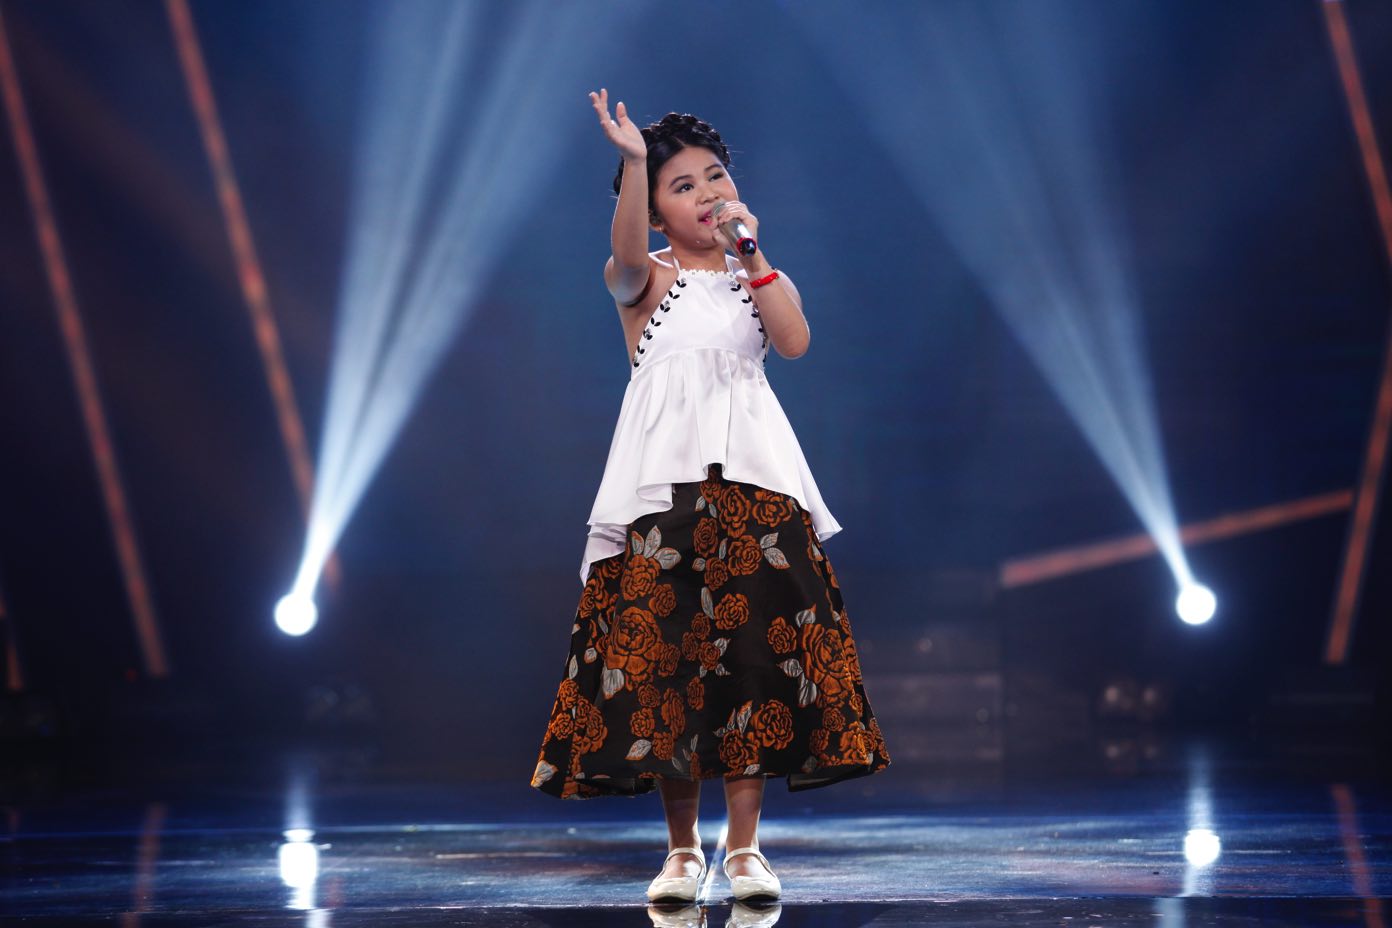 Bảo Trân - kho báu quý giá nhất của Vietnam Idol Kids